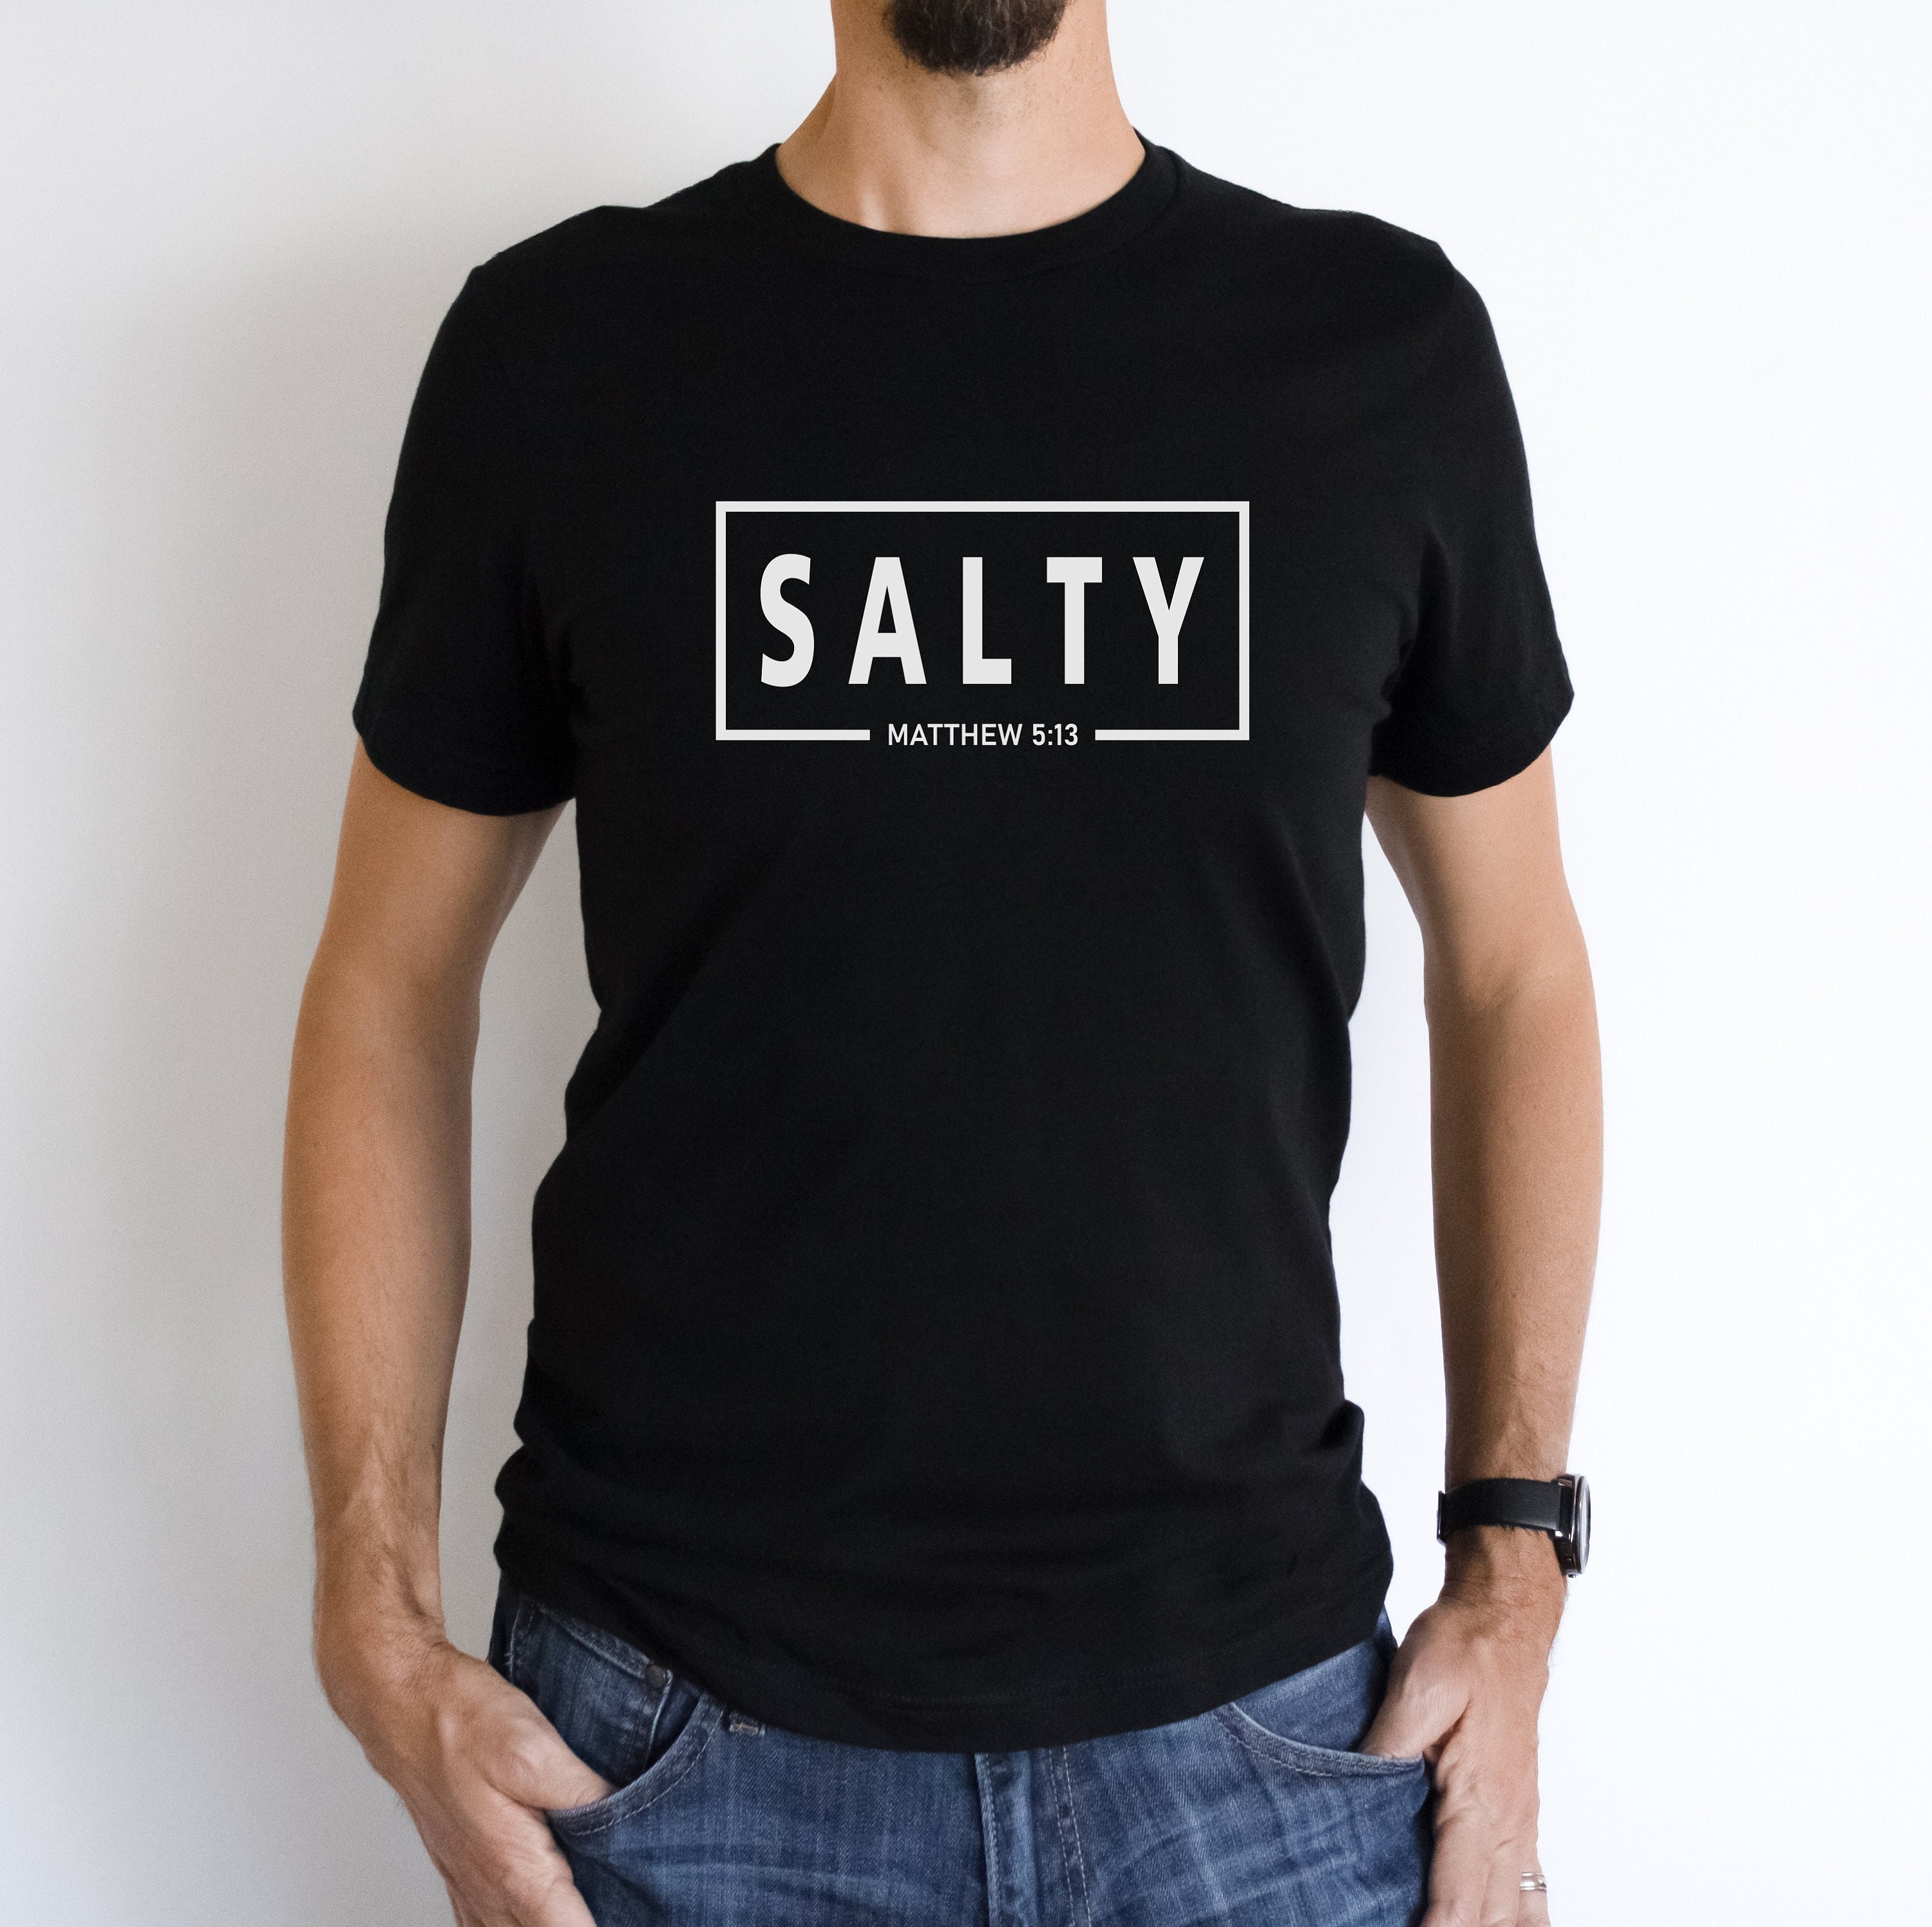 Færøerne deltage At vise Salty Shirt Christian Shirts Modern Christian Tees - Etsy